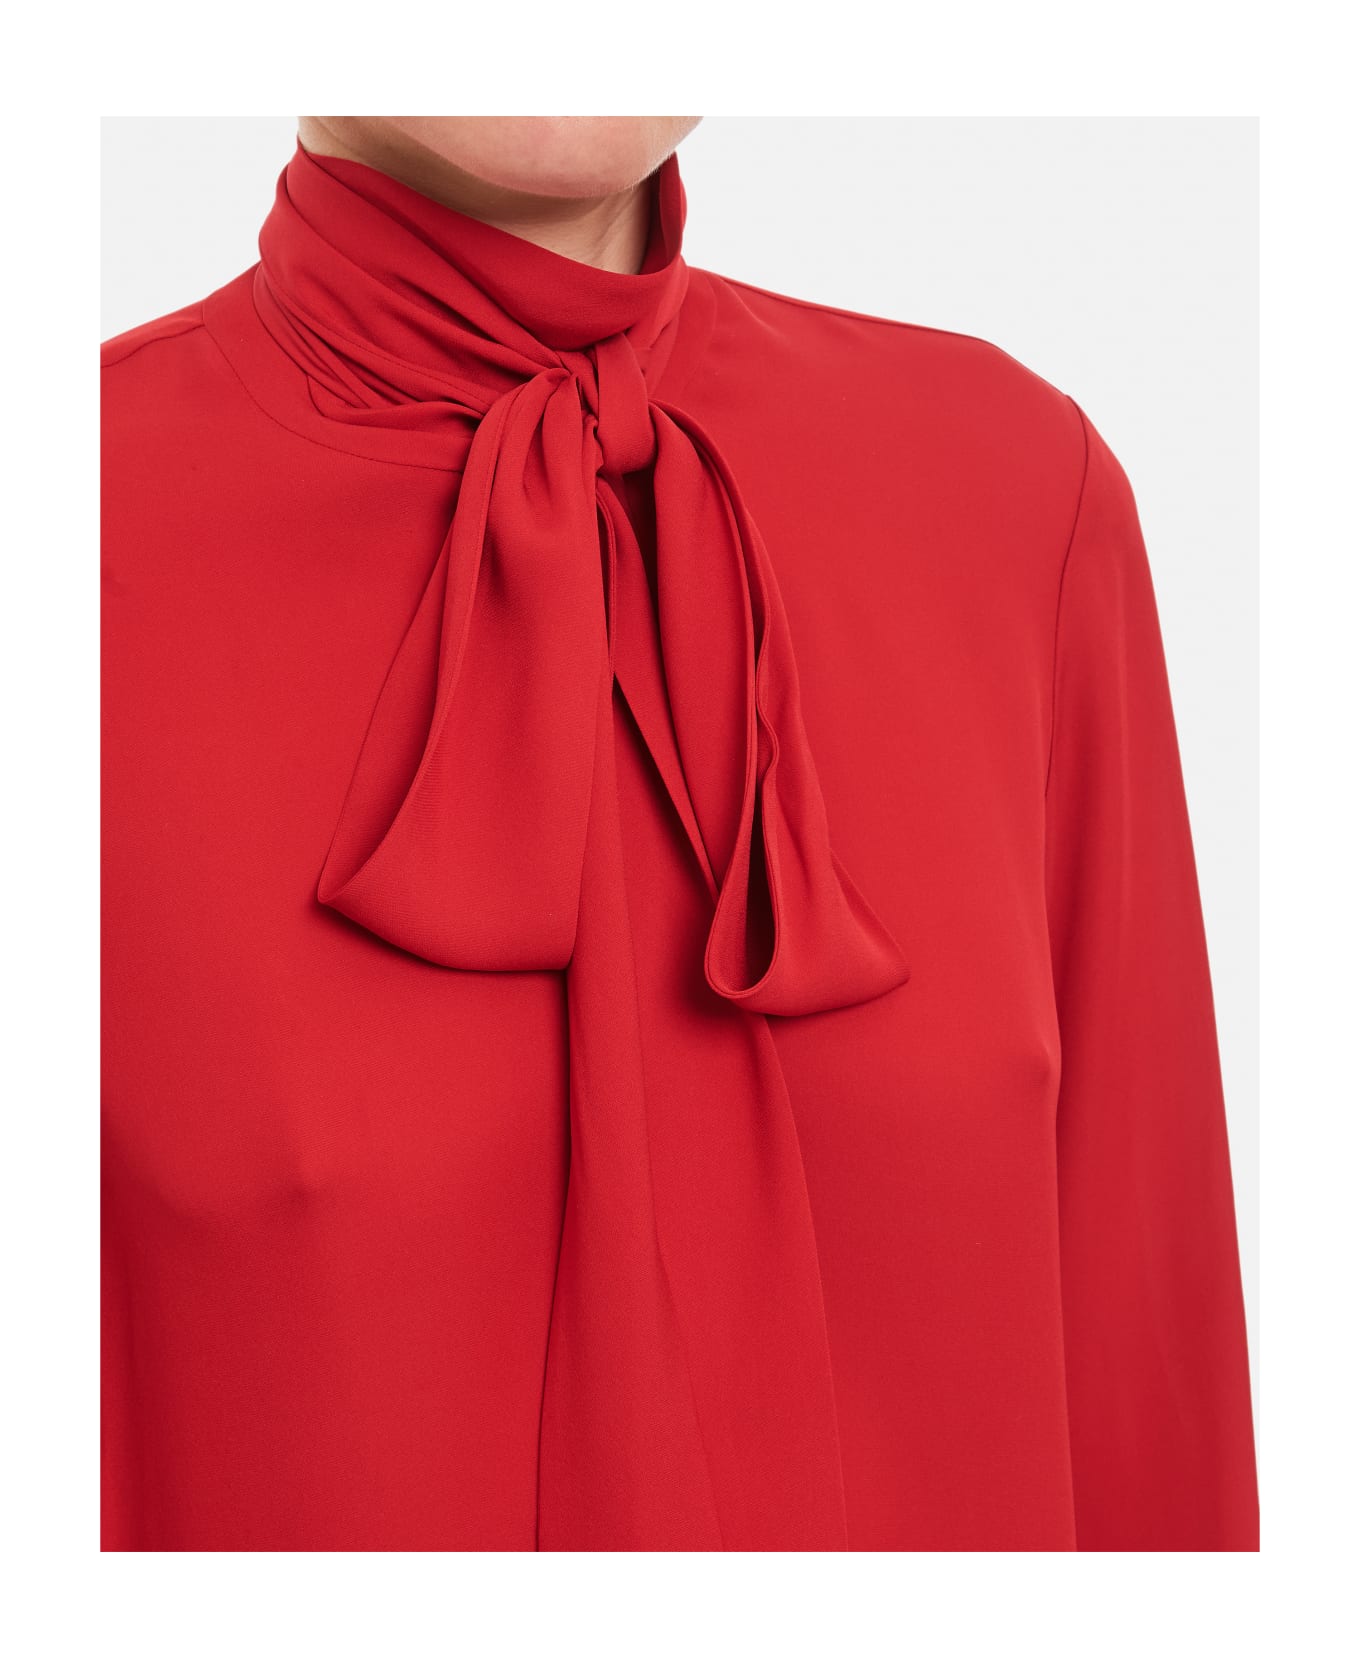 Khaite Tash Silk Top - Red